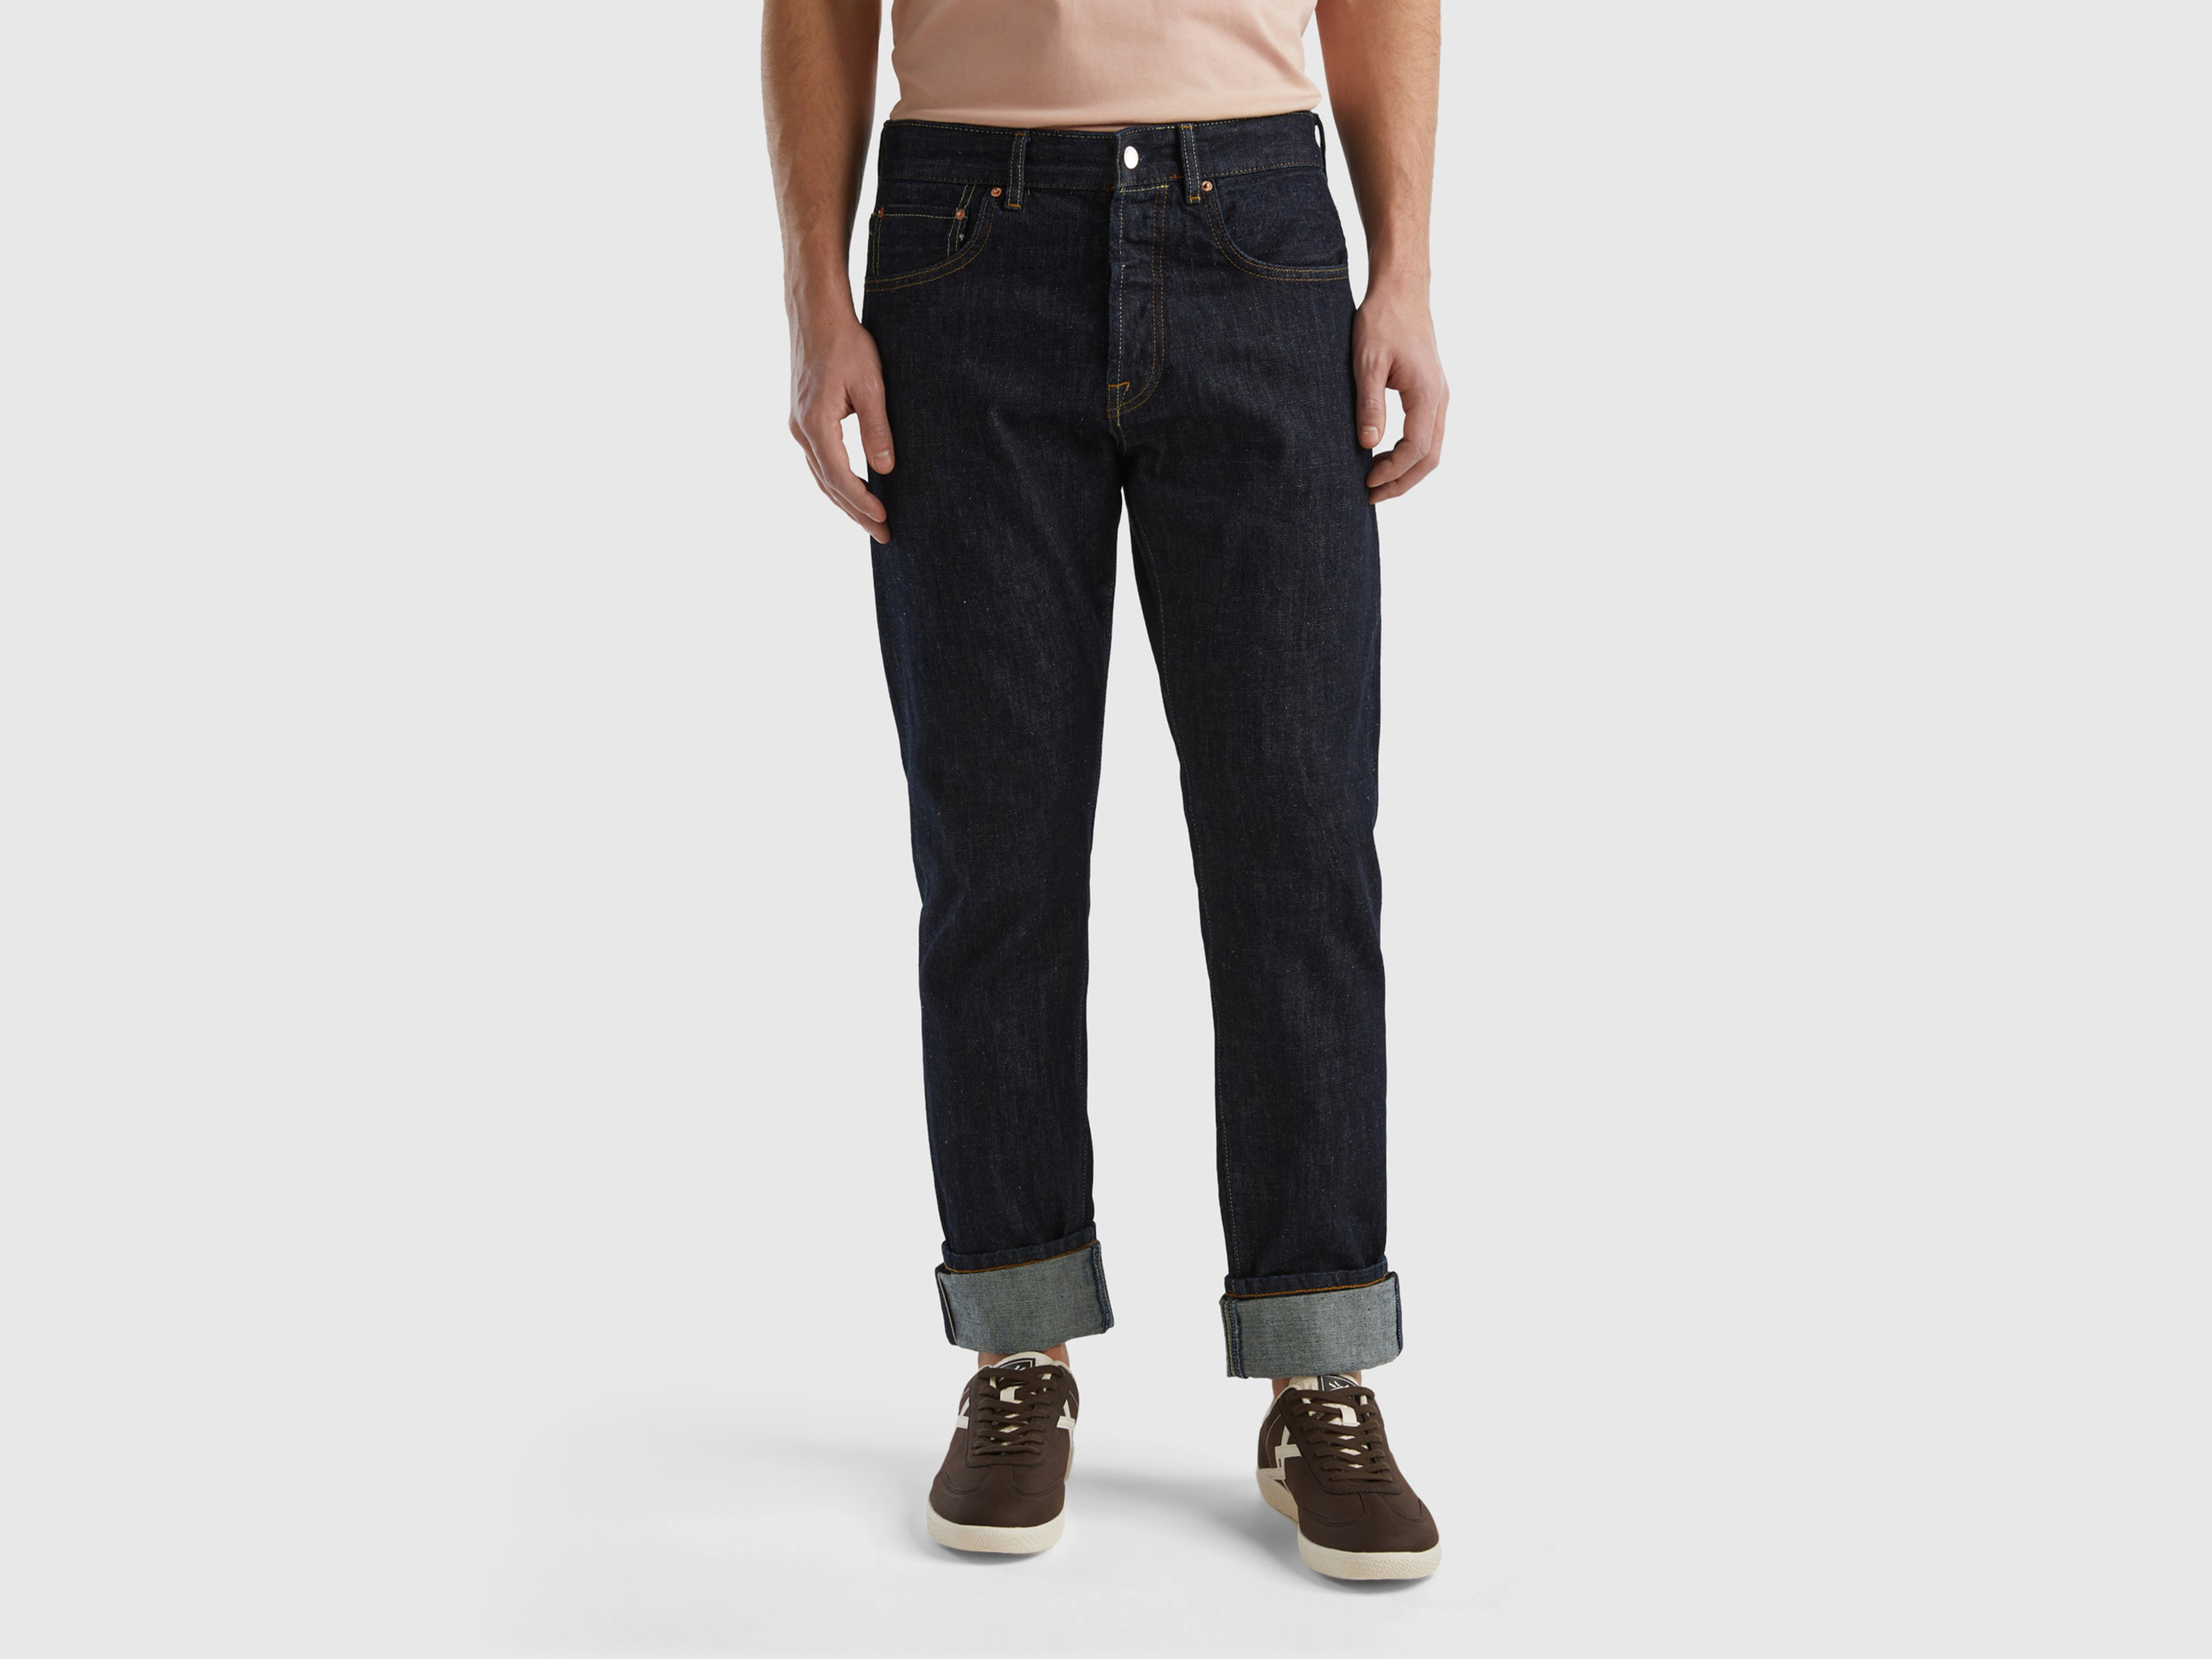 Benetton, Selvedge Denim Jeans, size 40, Black, Men